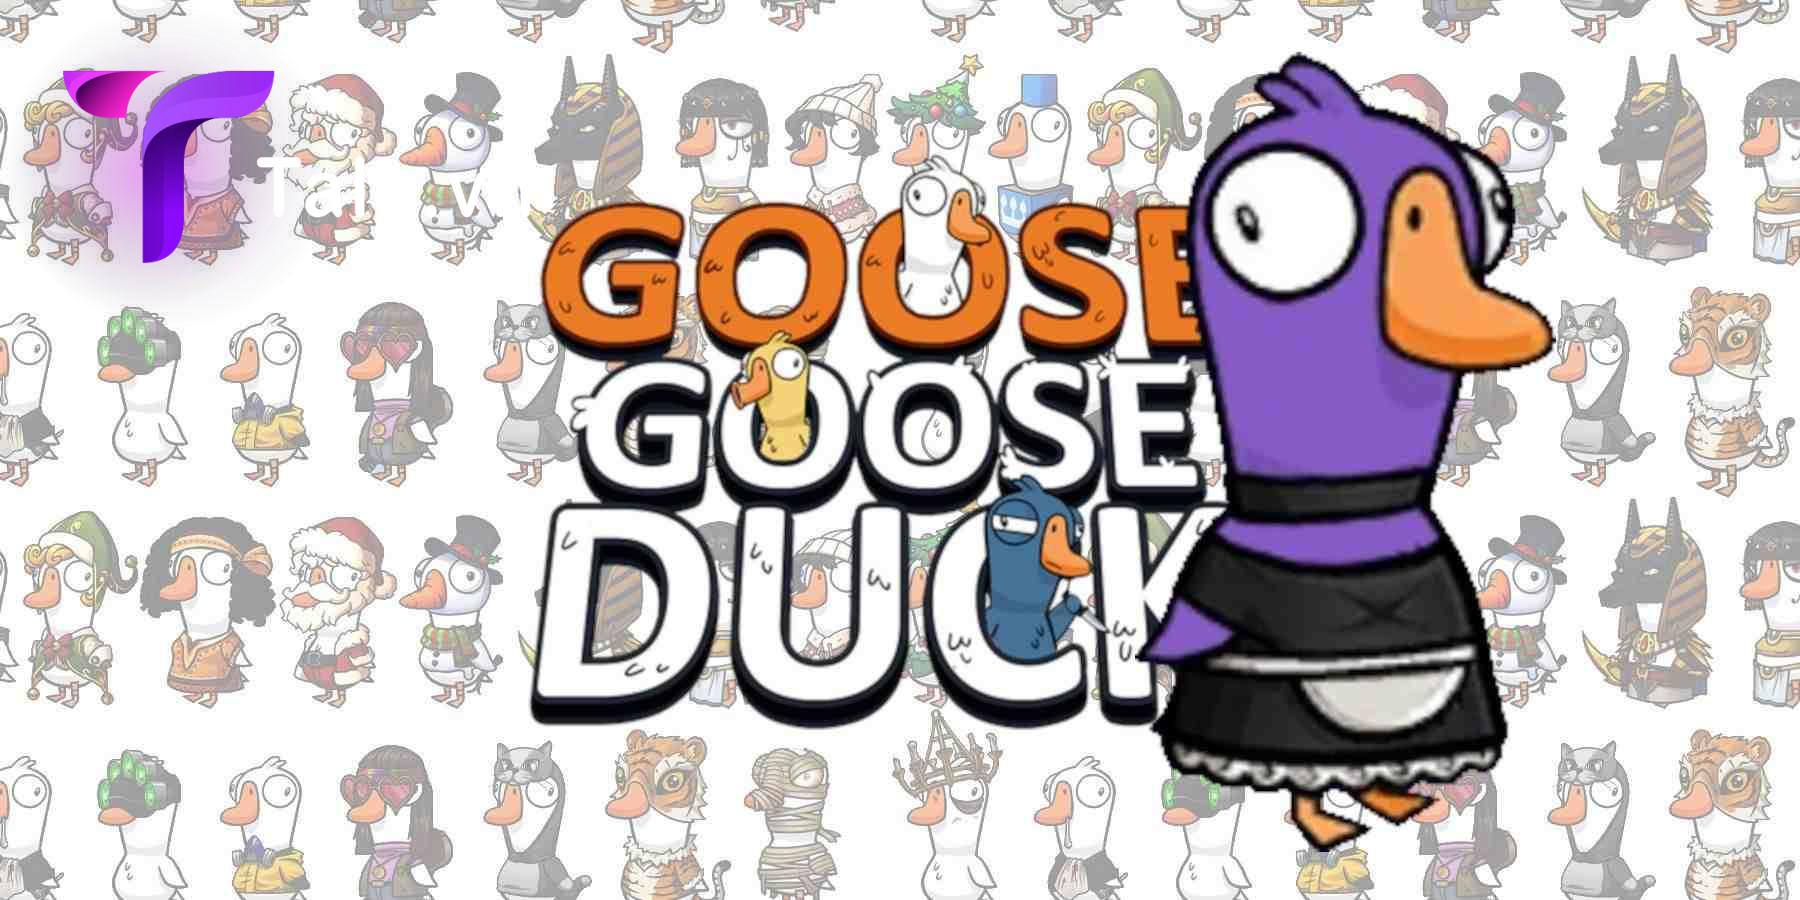 tai-goose-goose-duck-pc-talk